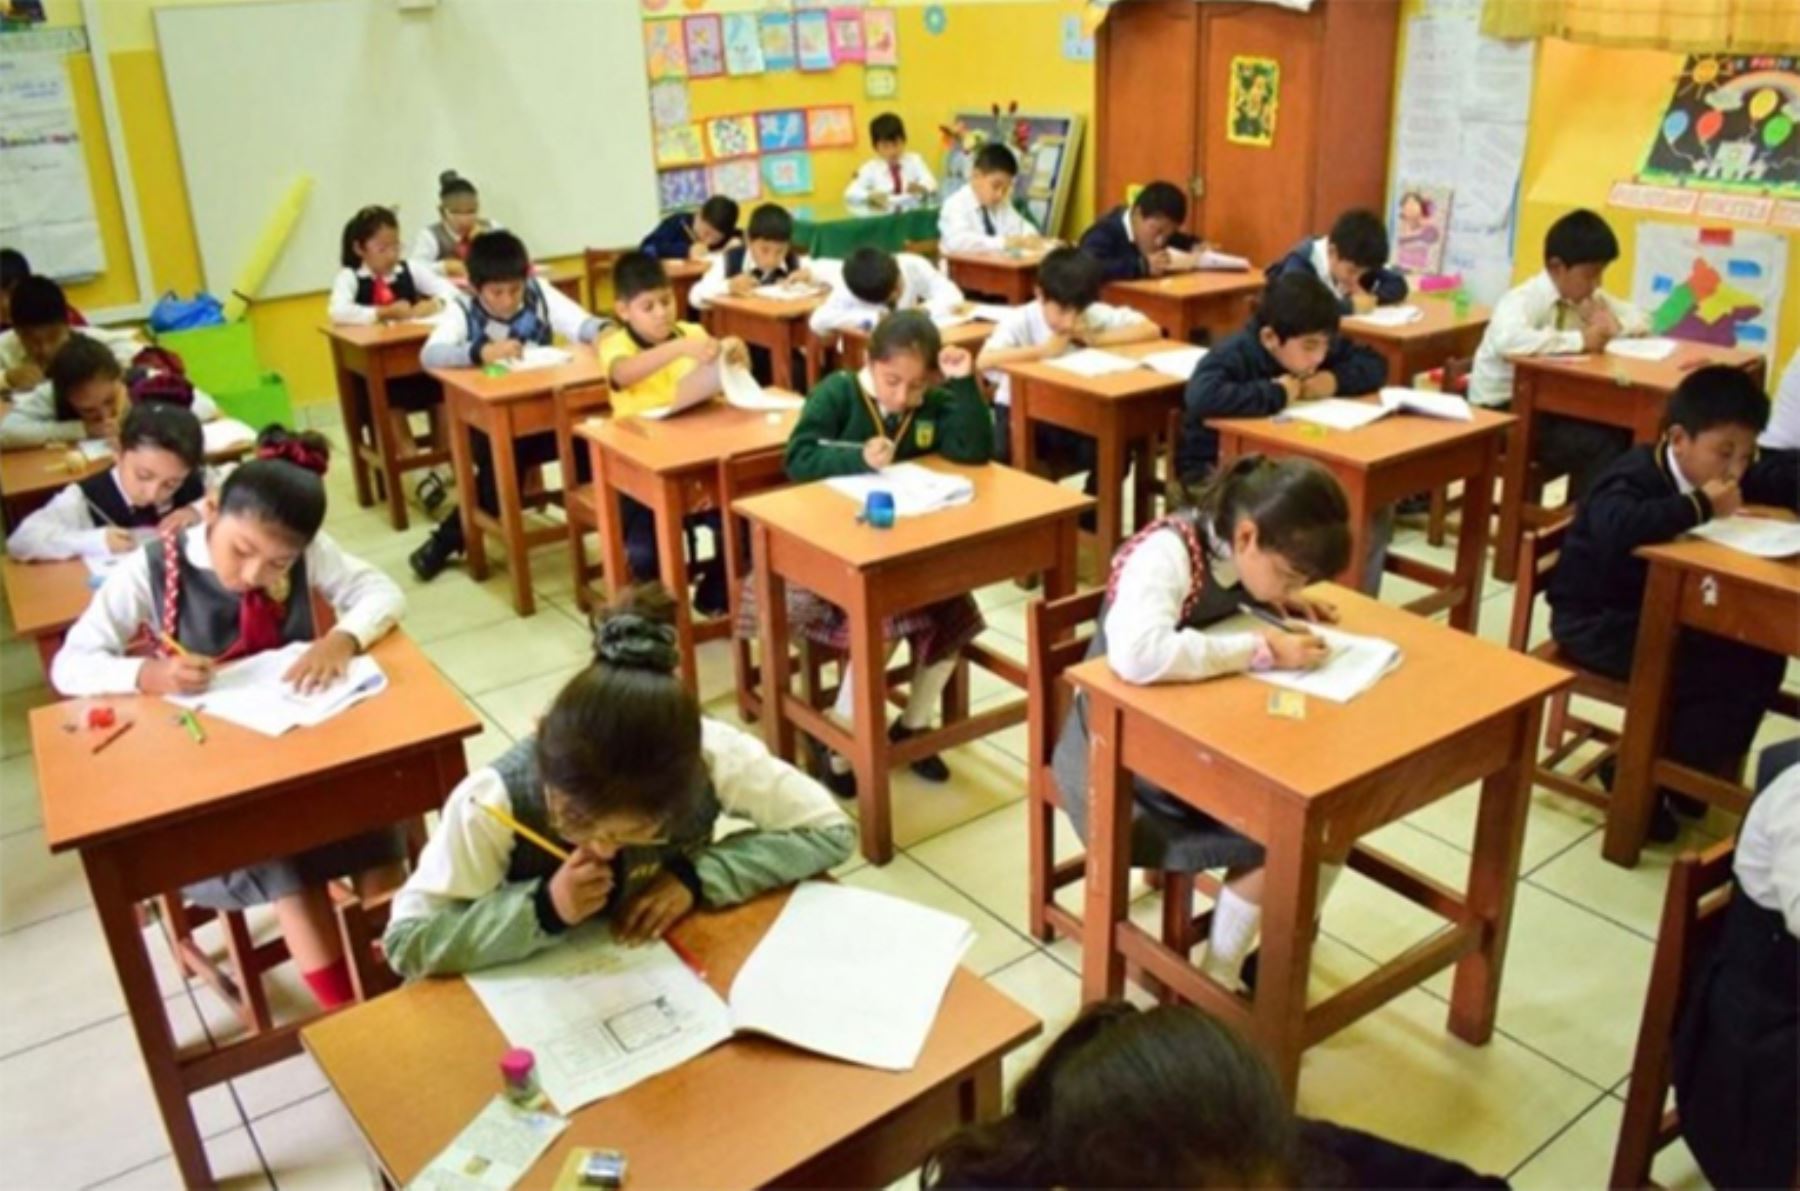 La región Tacna ocupó, por cuarto año consecutivo, el primer lugar en todo el país, en los resultados de la Evaluación Censal de Estudiantes (ECE) y en la Evaluación Muestral (EM), ejecutados por el Ministerio de Educación (Minedu).